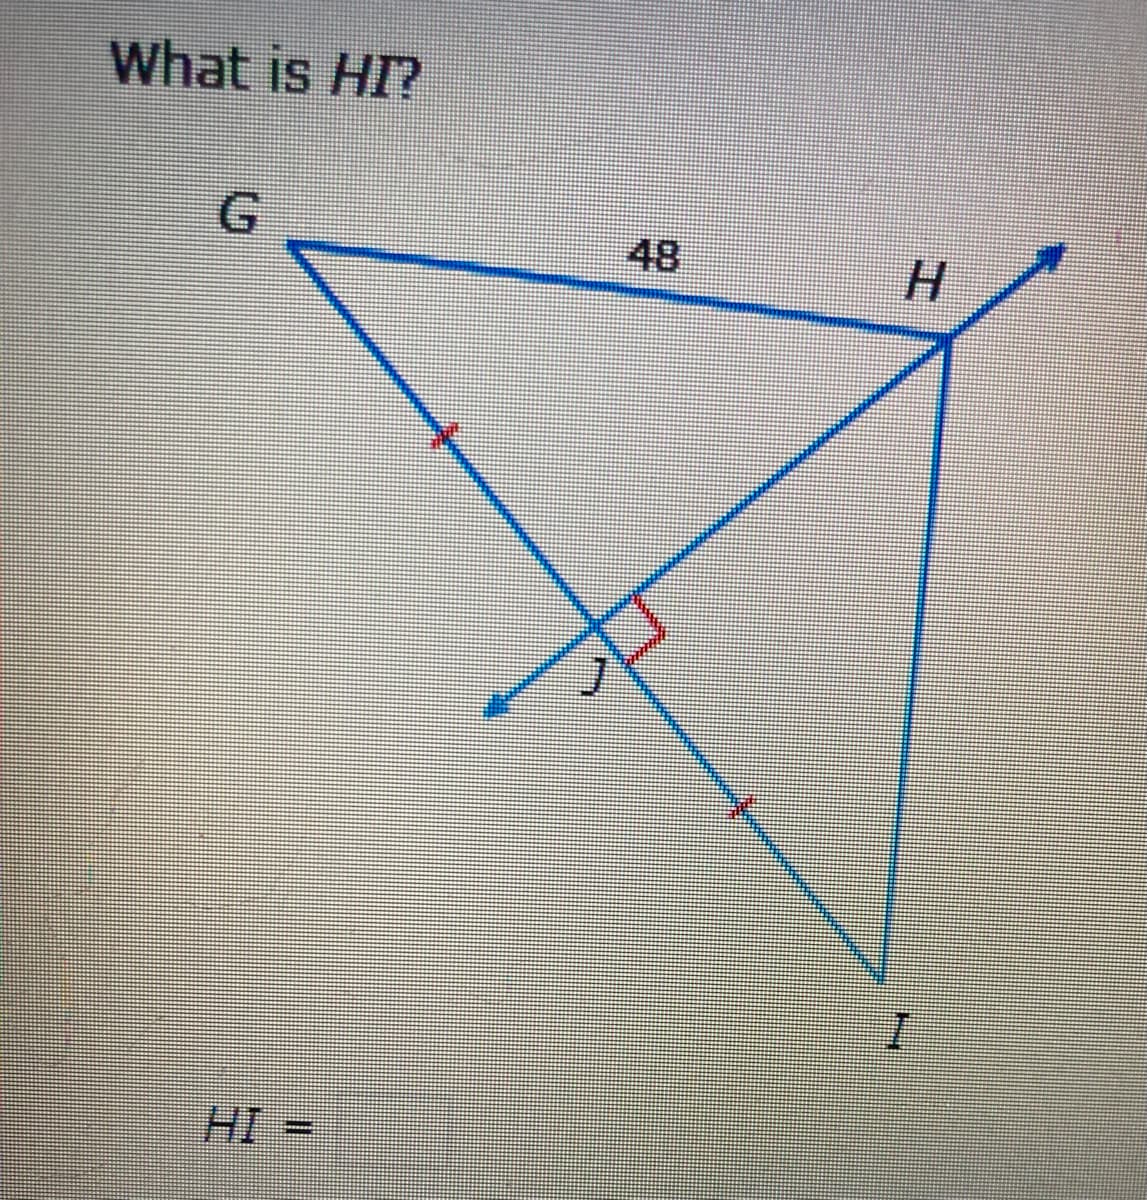 What is HI?
G.
48
HI
